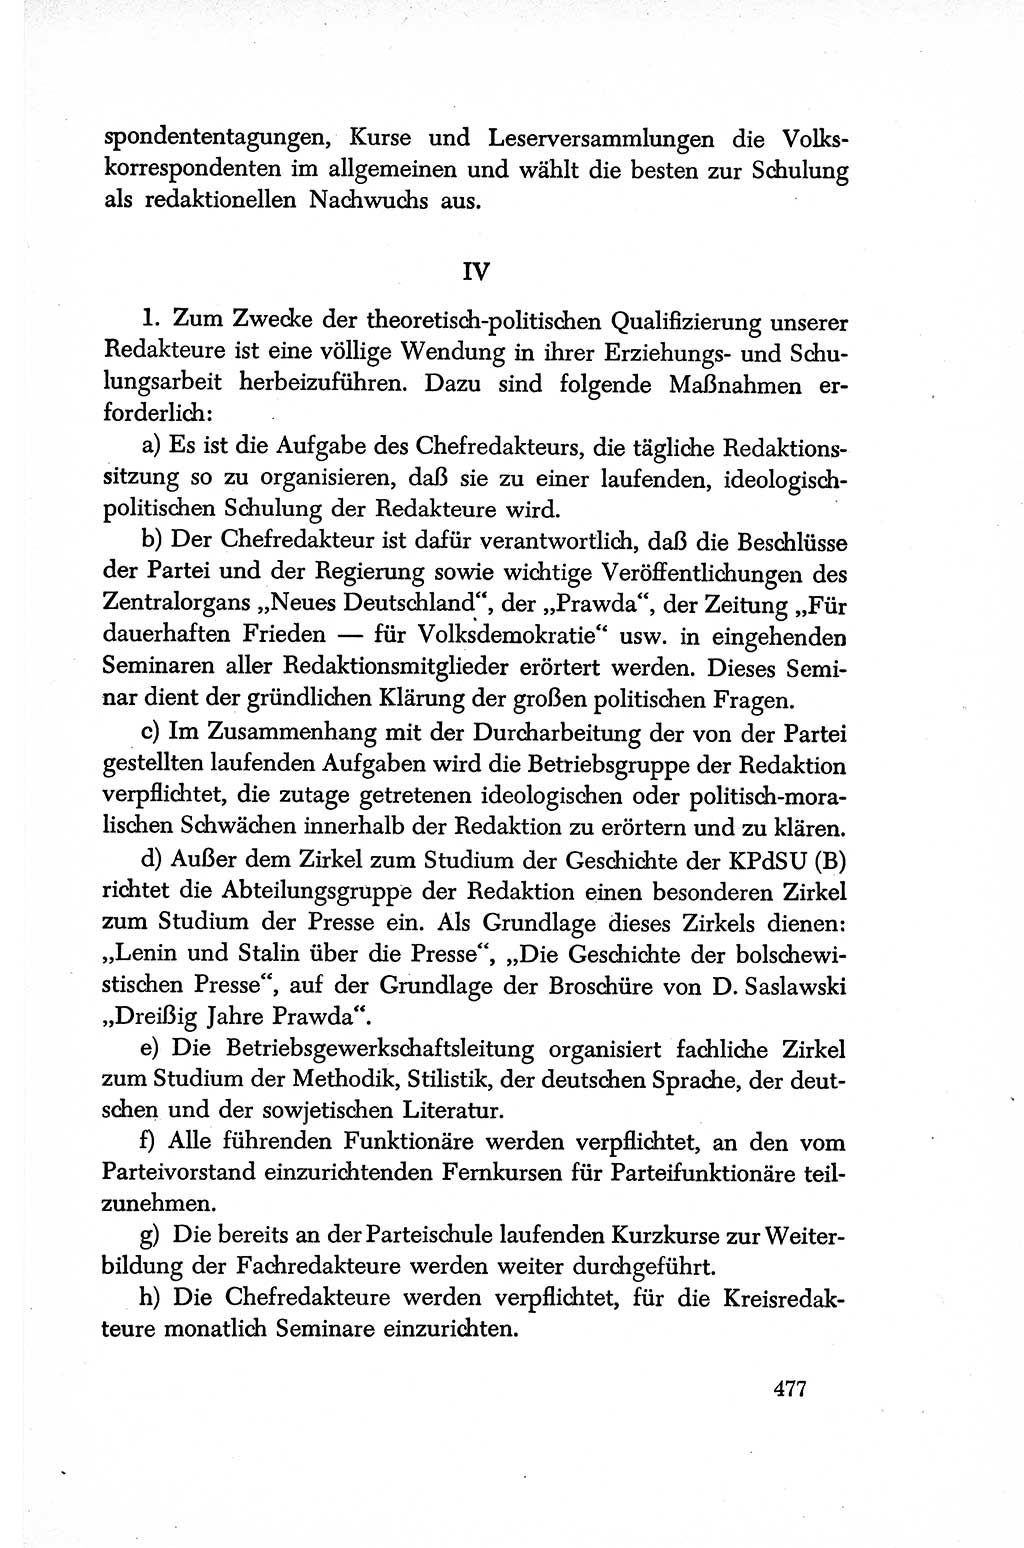 Dokumente der Sozialistischen Einheitspartei Deutschlands (SED) [Sowjetische Besatzungszone (SBZ) Deutschlands/Deutsche Demokratische Republik (DDR)] 1948-1950, Seite 477 (Dok. SED SBZ Dtl. DDR 1948-1950, S. 477)